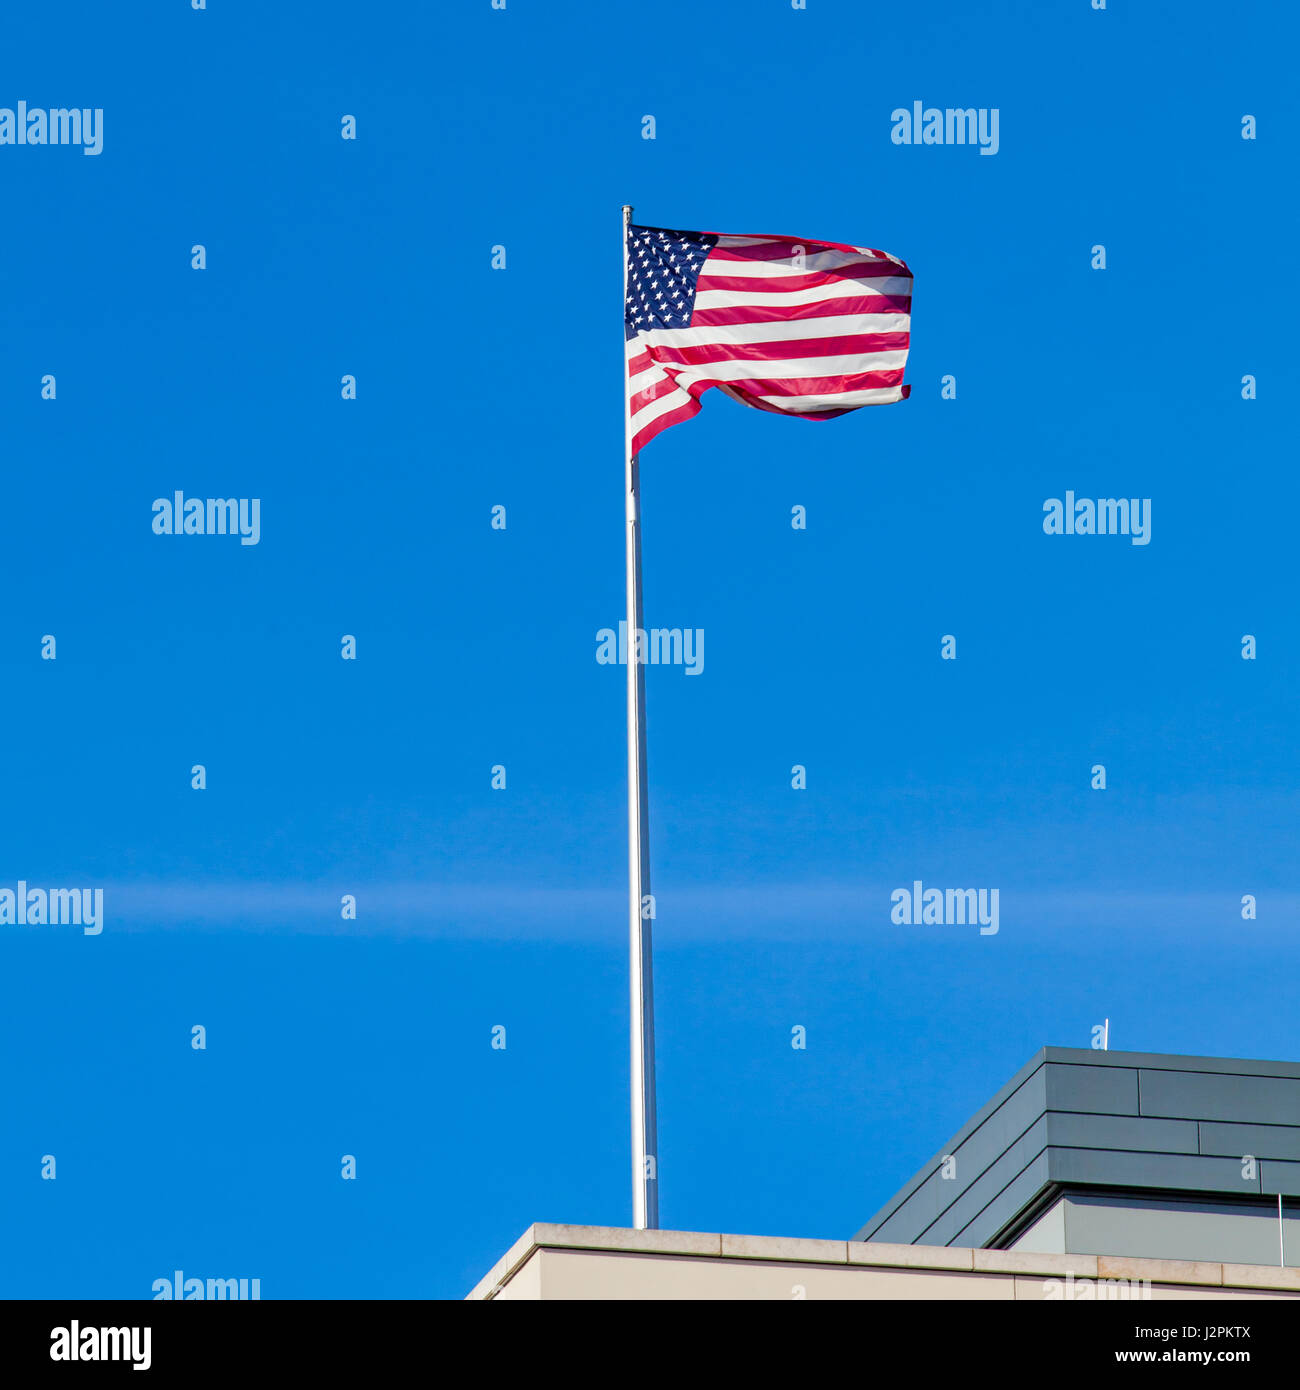 Teekesselchen  Fahne - vom Sturm zerfetzte Deutschlandflagge vor  blaugrauem Himmel - ein lizenzfreies Stock Foto von Photocase